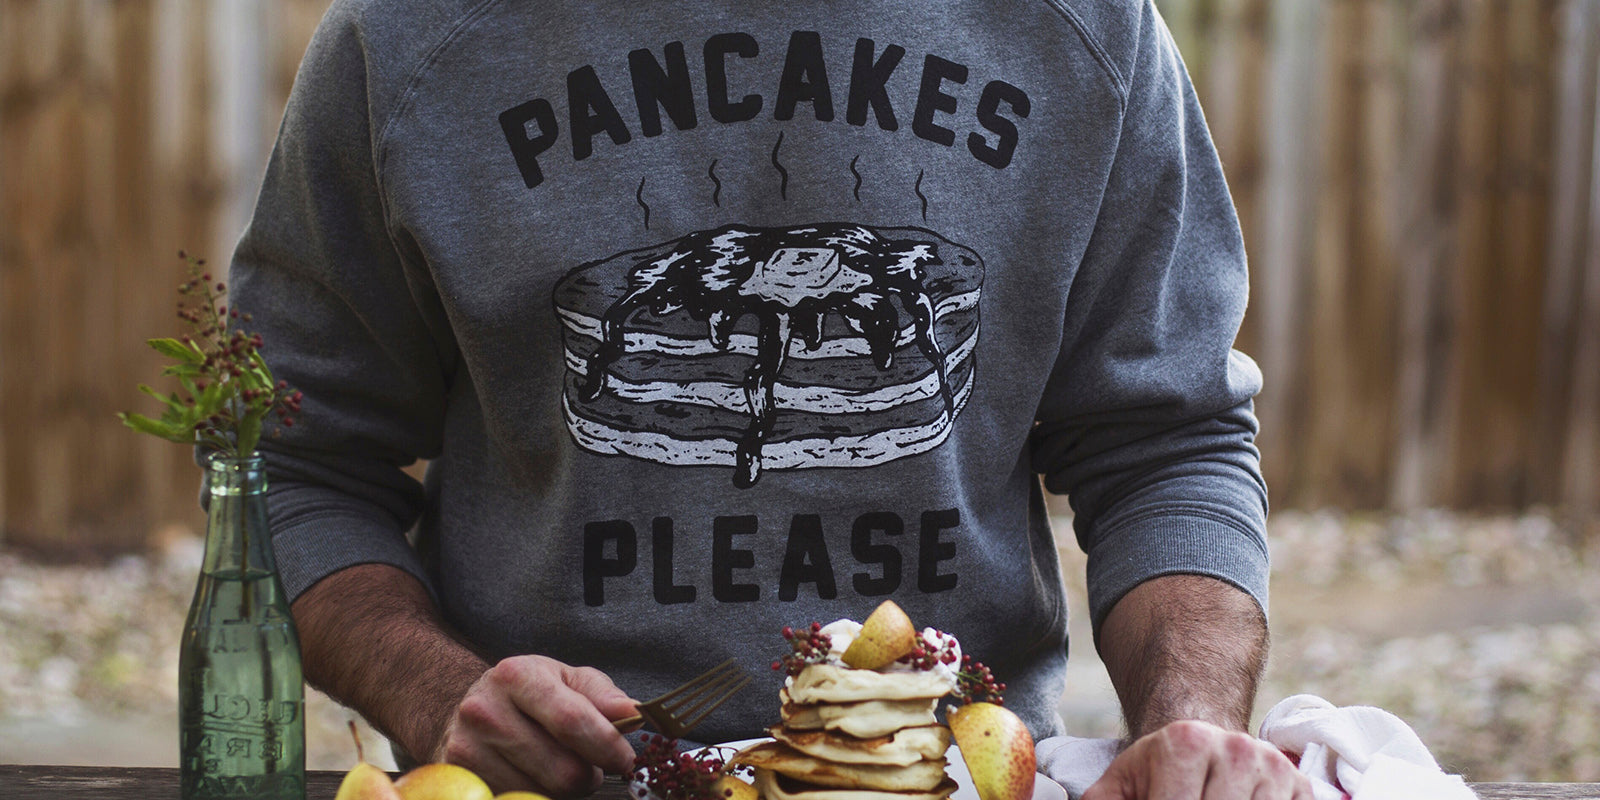 Pancakes Please Men's Vintage Raglan Crewneck Sweatshirt for Breakfast Brunch Foodie Food Lovers